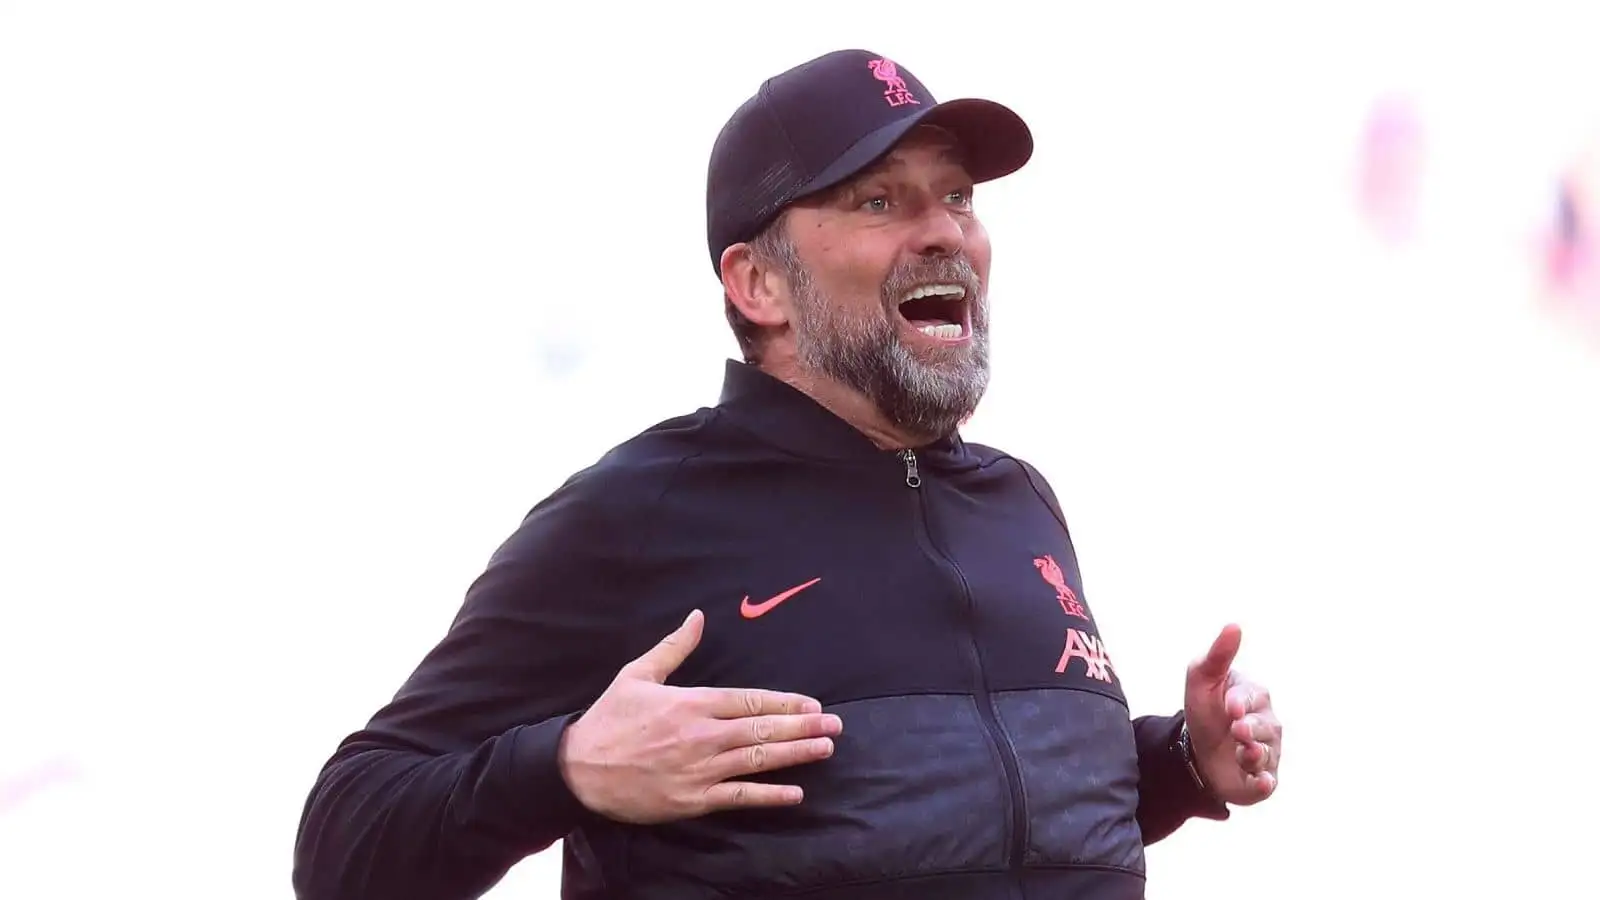 Jurgen Klopp, Liverpool manager, delighted